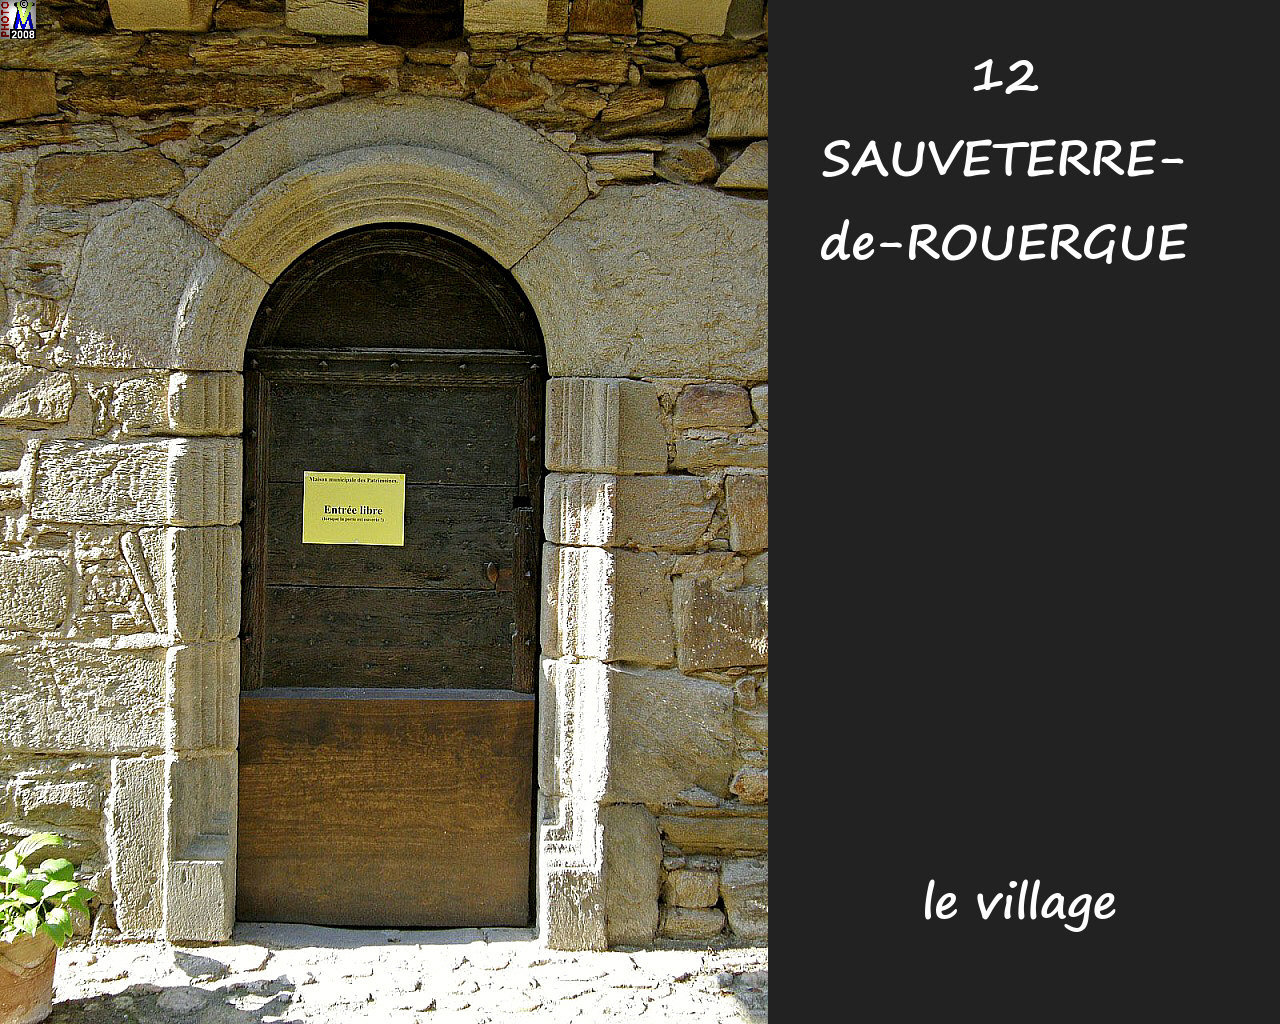 12SAUVETERRE-ROUERGUE_village_170.jpg